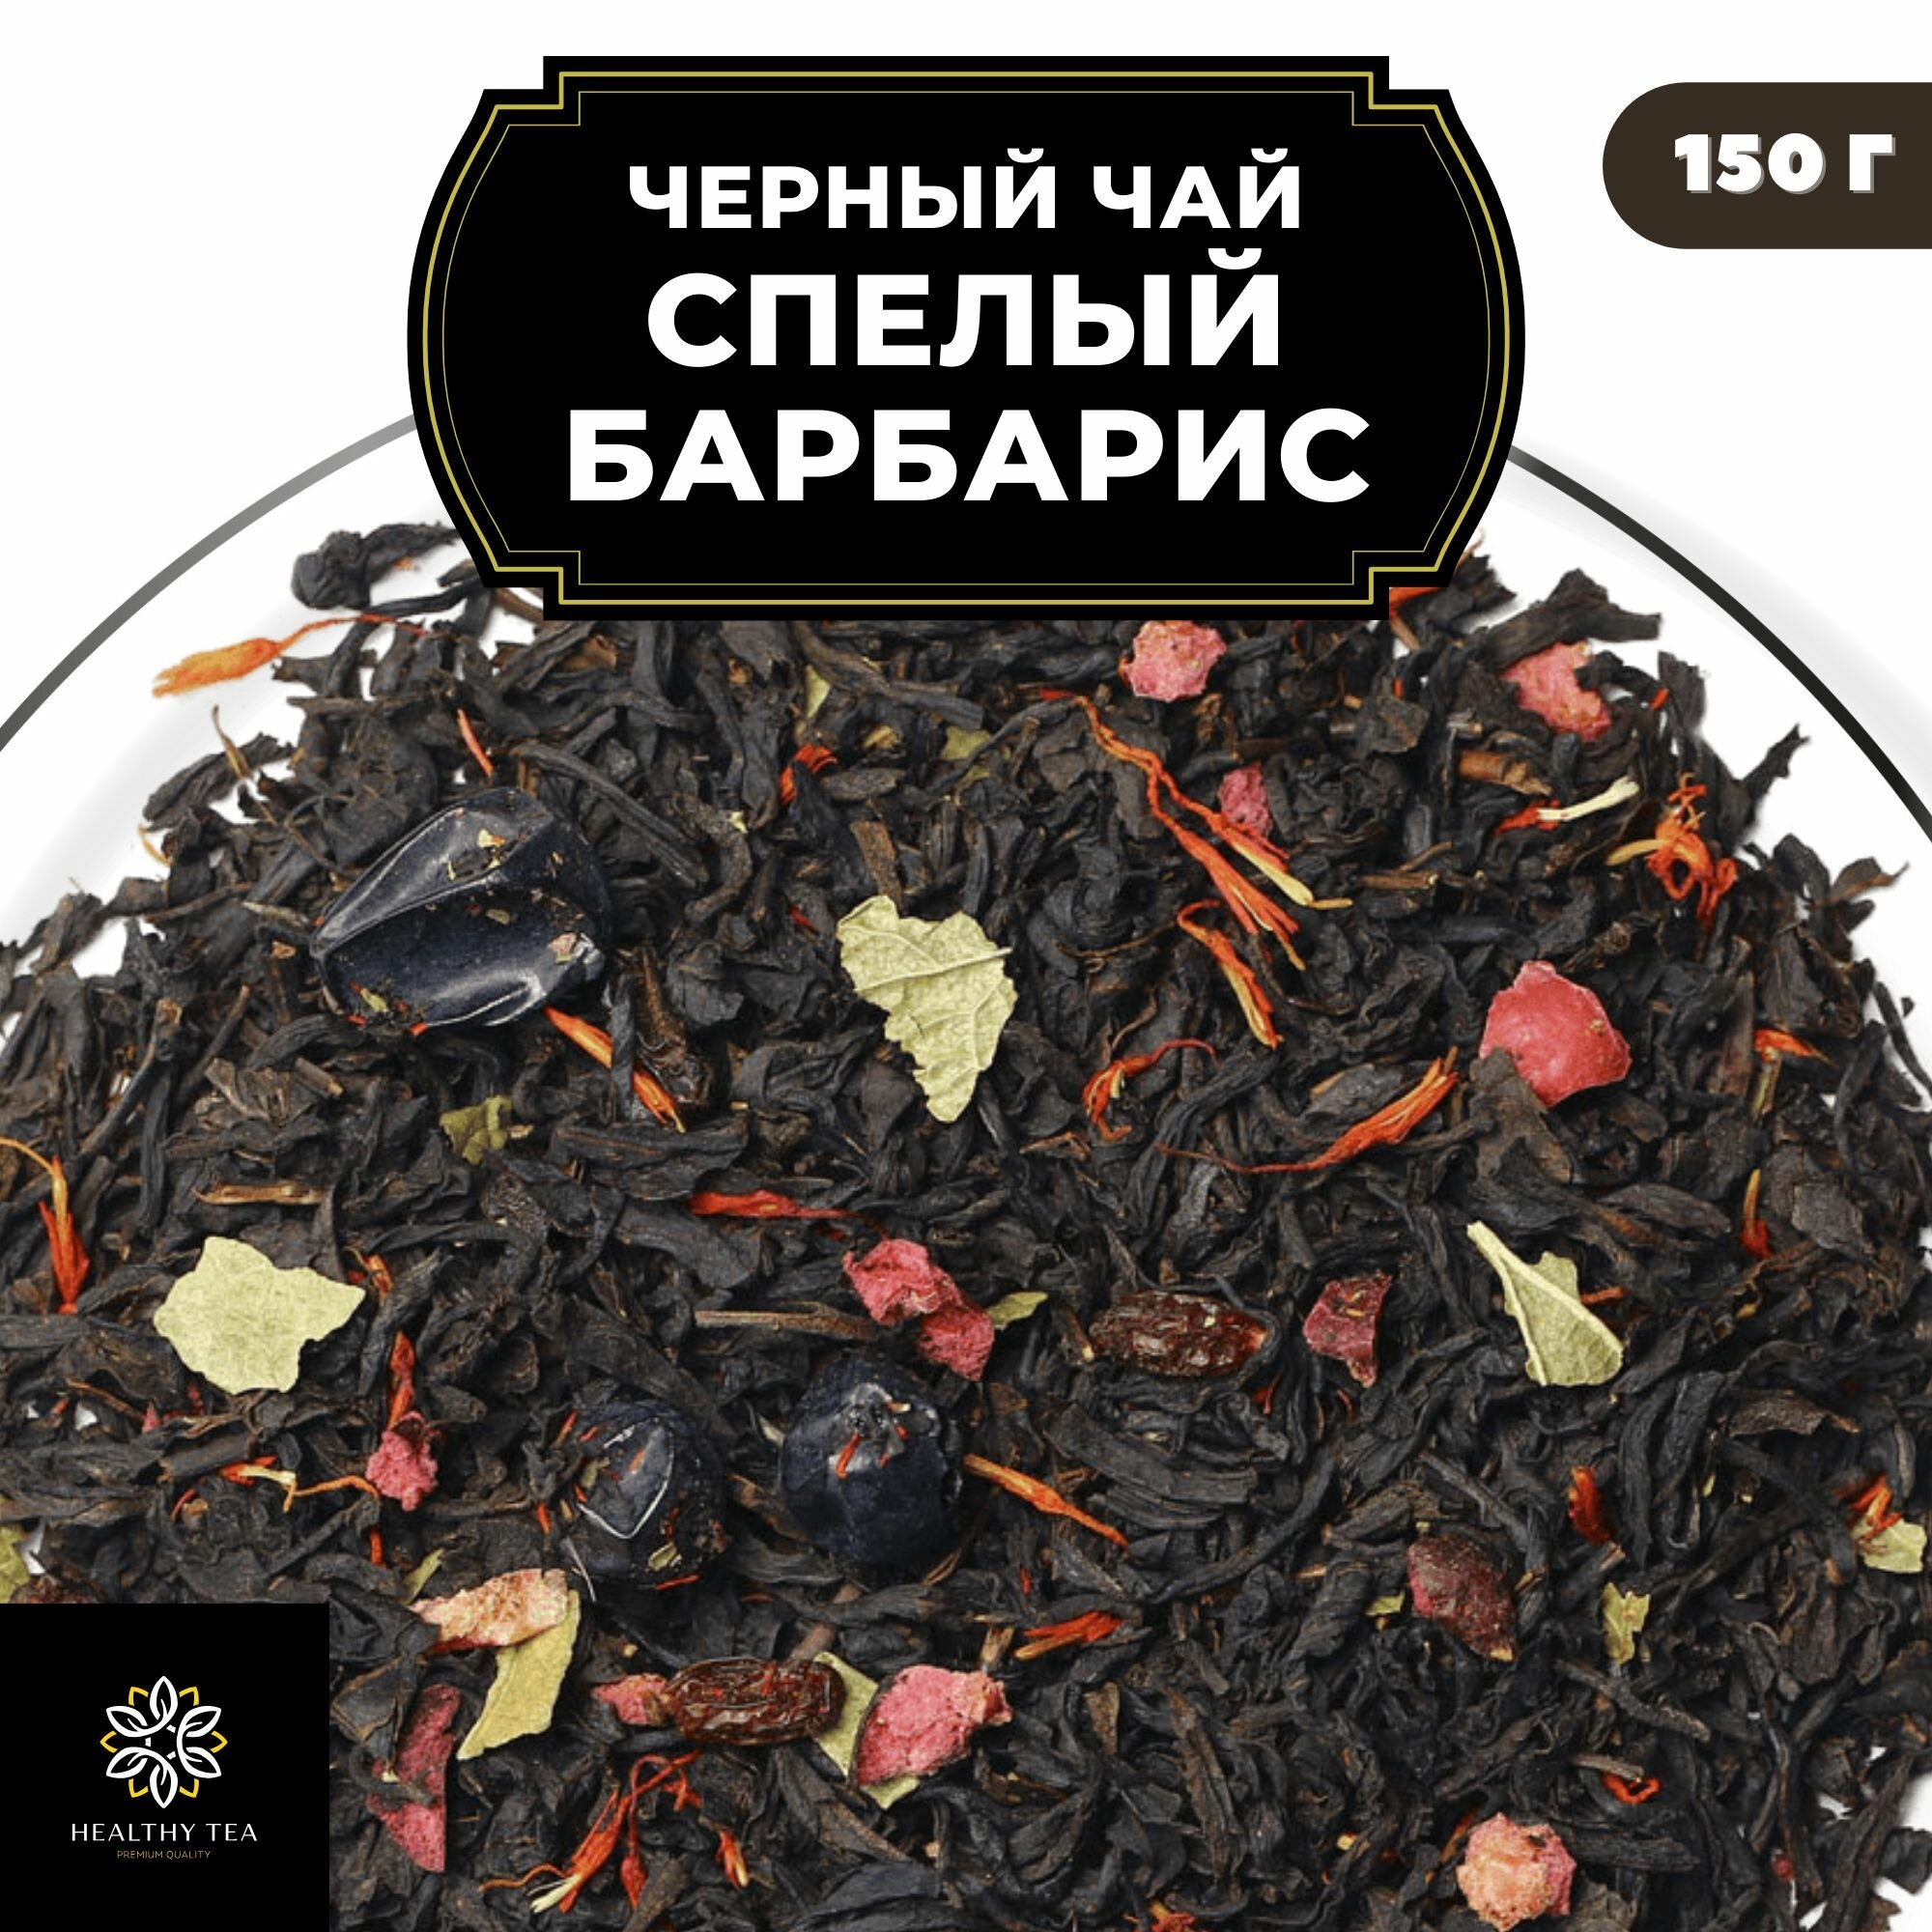 Индийский Черный чай с барбарисом, клюквой и смородиной "Спелый барбарис" Полезный чай / HEALTHY TEA, 150 гр